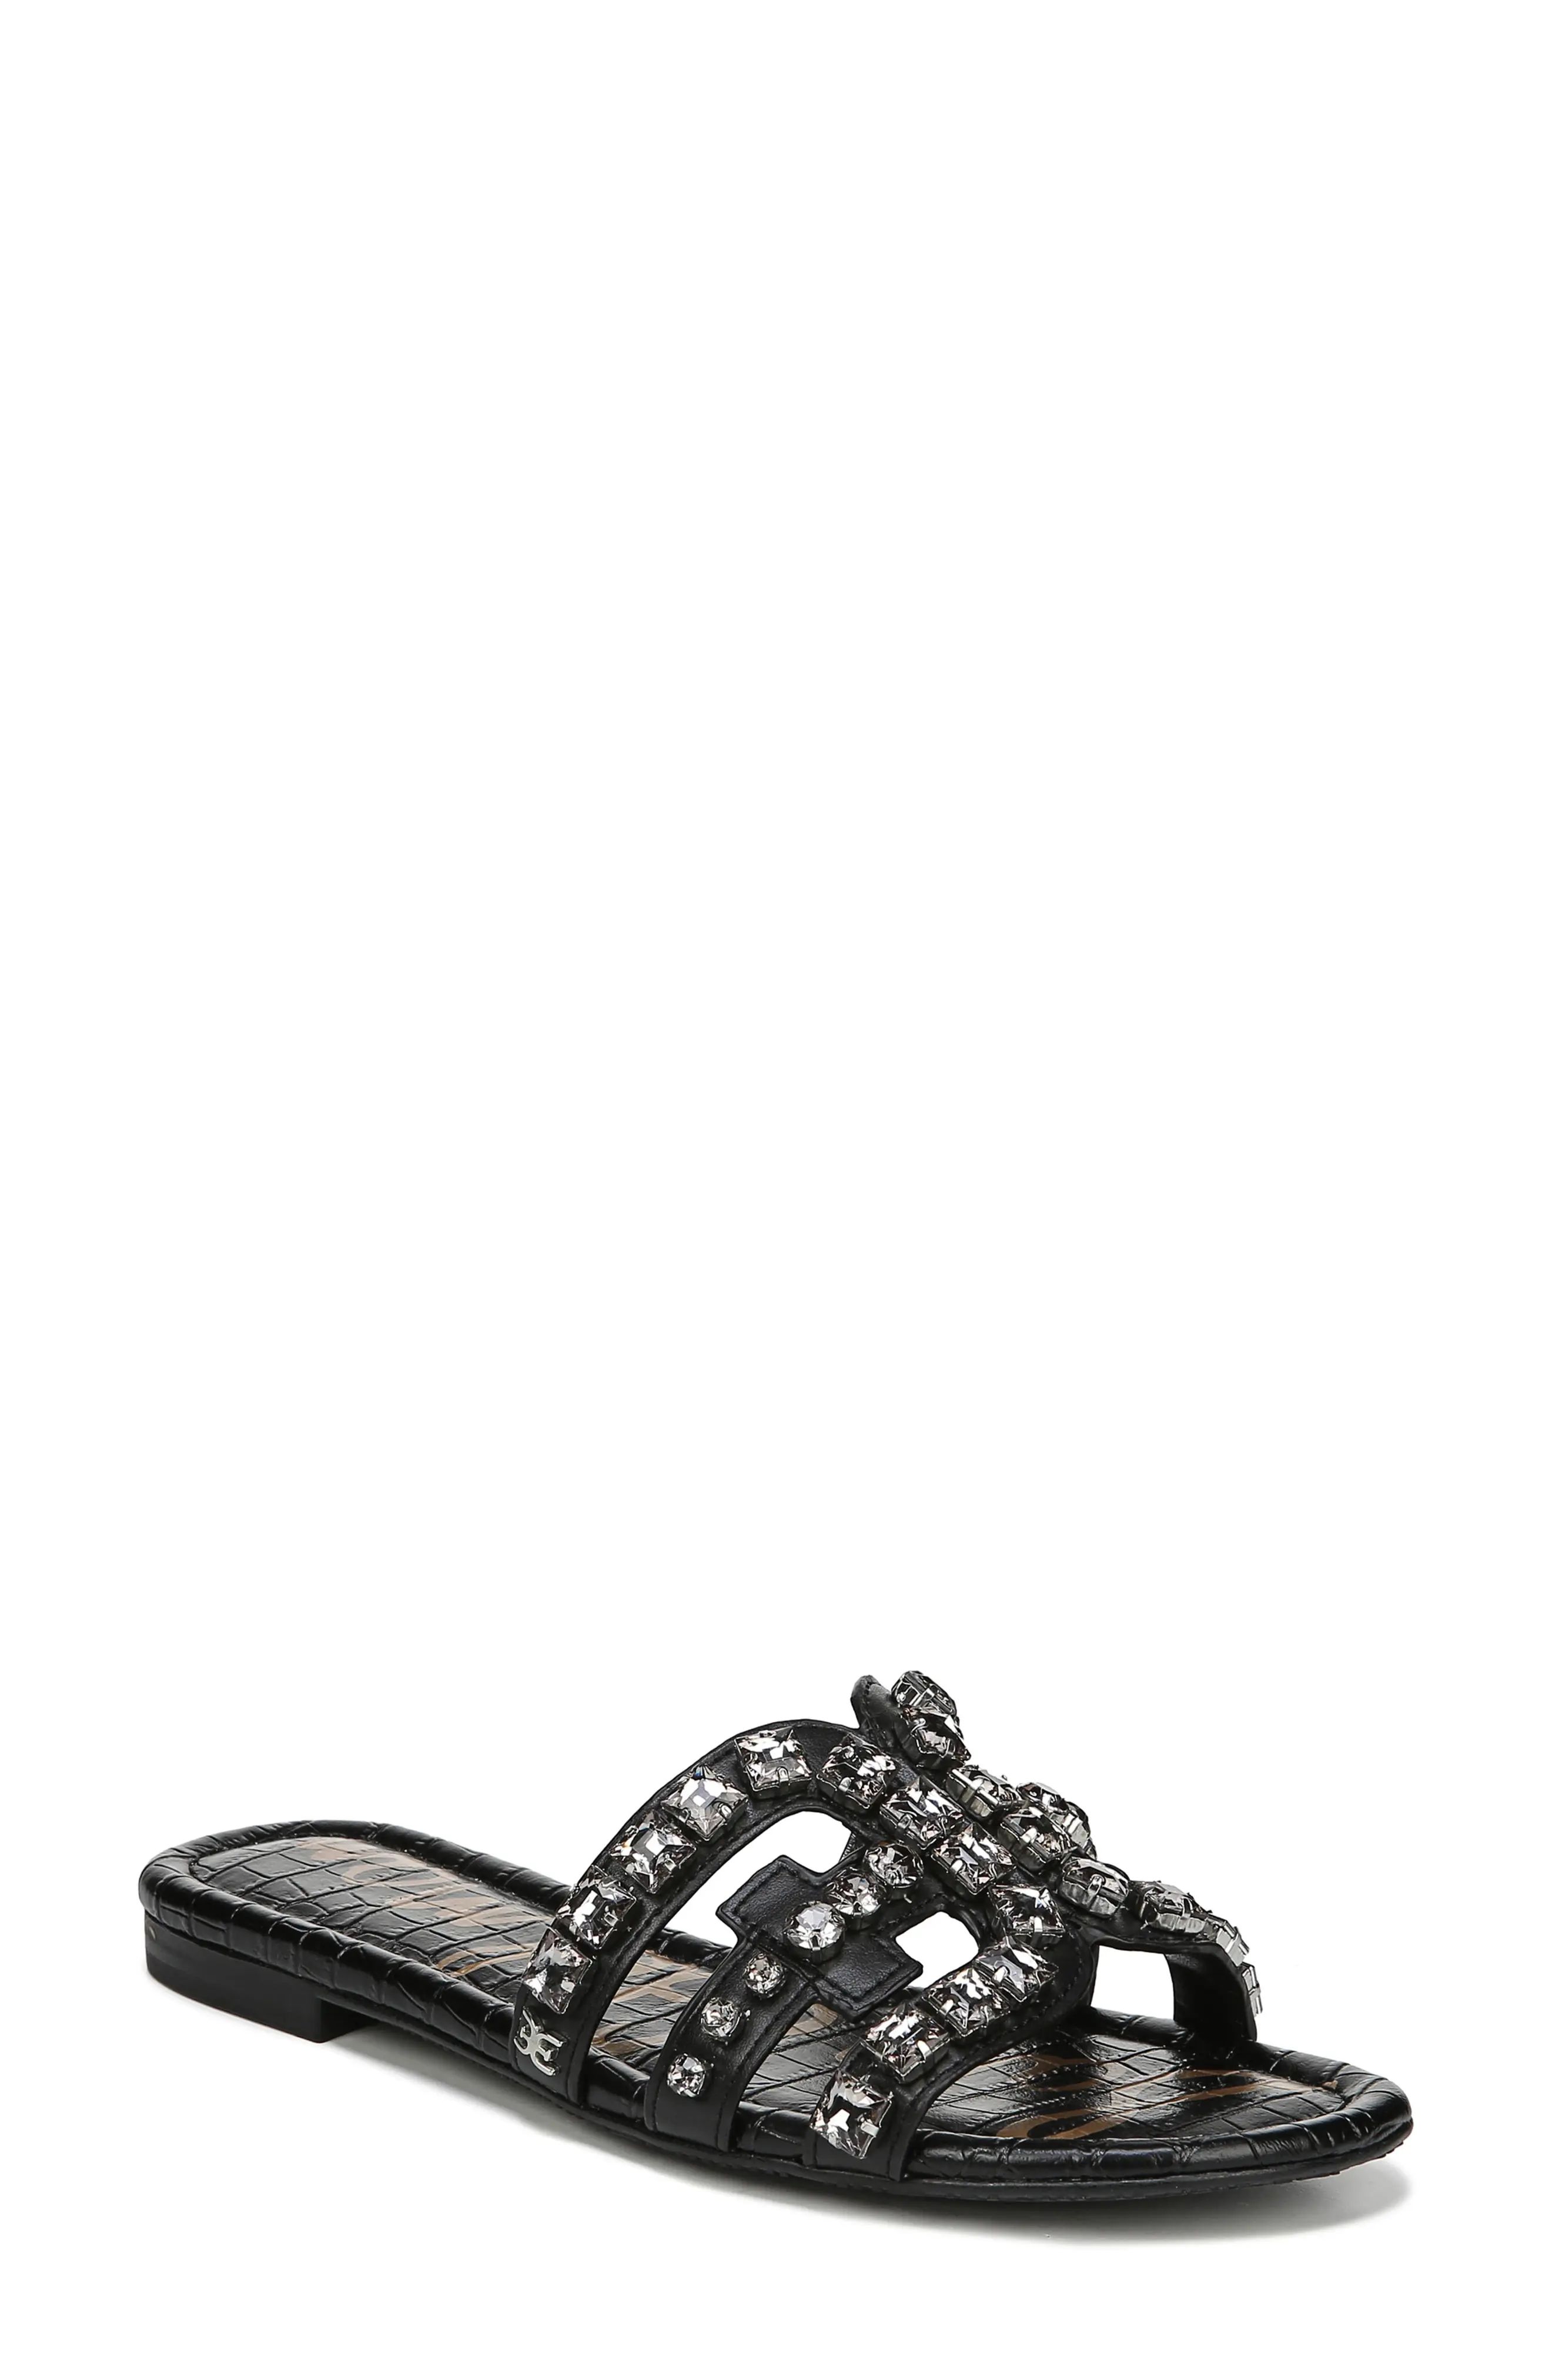 Women's Sam Edelman Bay 2 Embellished Slide Sandal, Size 5 M - Black | Nordstrom